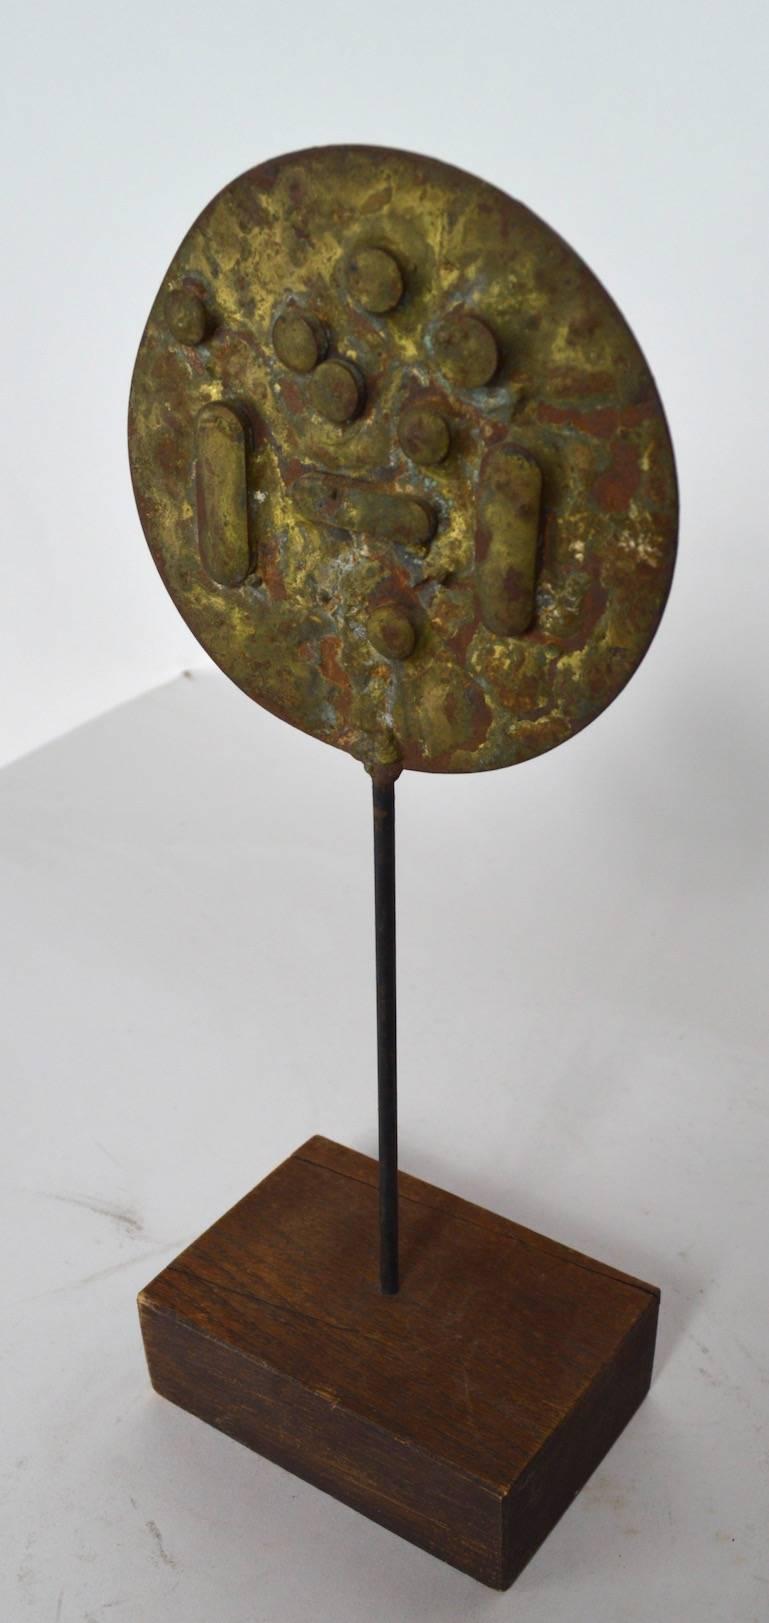 Sculpture brutaliste à l'échelle d'une armoire en bronze, laiton et bois, réalisée par le célèbre sculpteur Dimitri Hadzi. Intrigant exemple abstrait en métal mixte signé sur la base, comme indiqué.
          